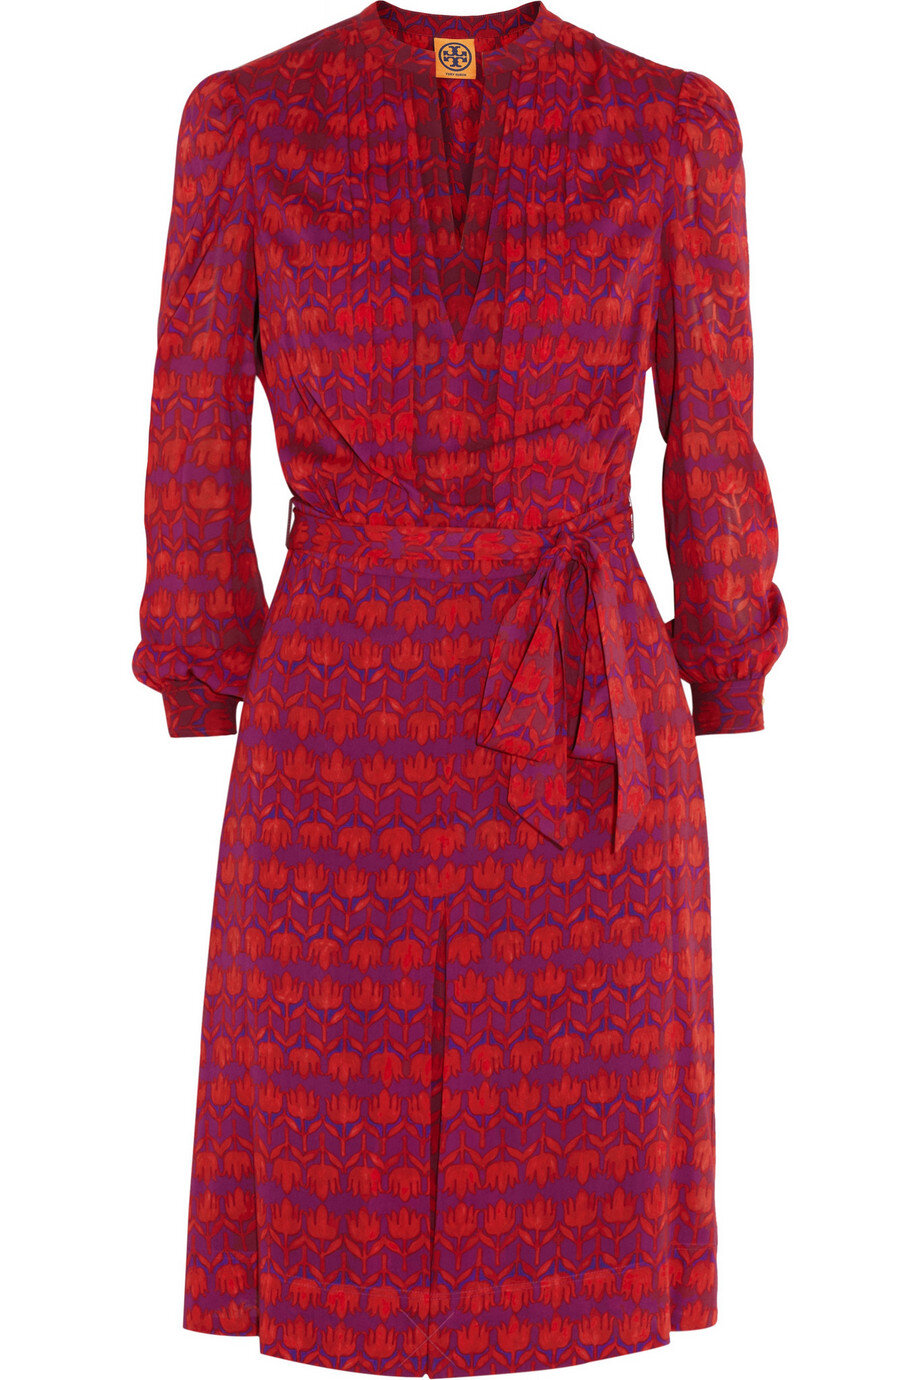 Tory Burch Judi Printed Stretch-silk Dress in Claret — UFO No More